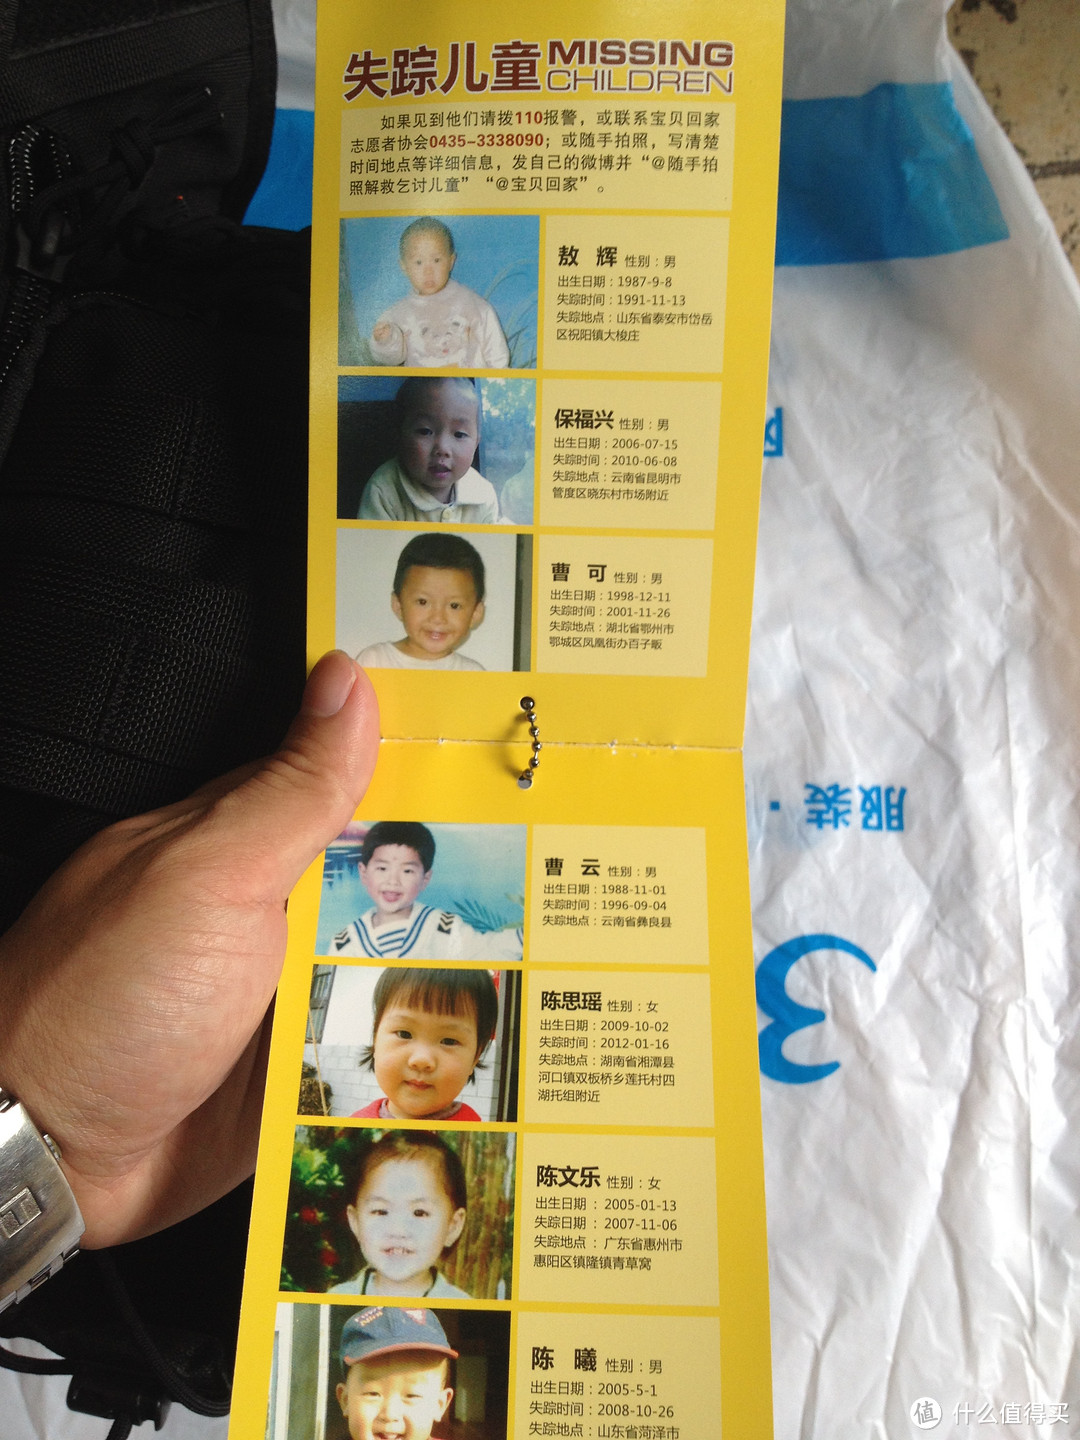 标牌的最后一页印有失踪儿童的照片，这倒让我感到意外，看来是个颇有社会责任感的企业，赞一个